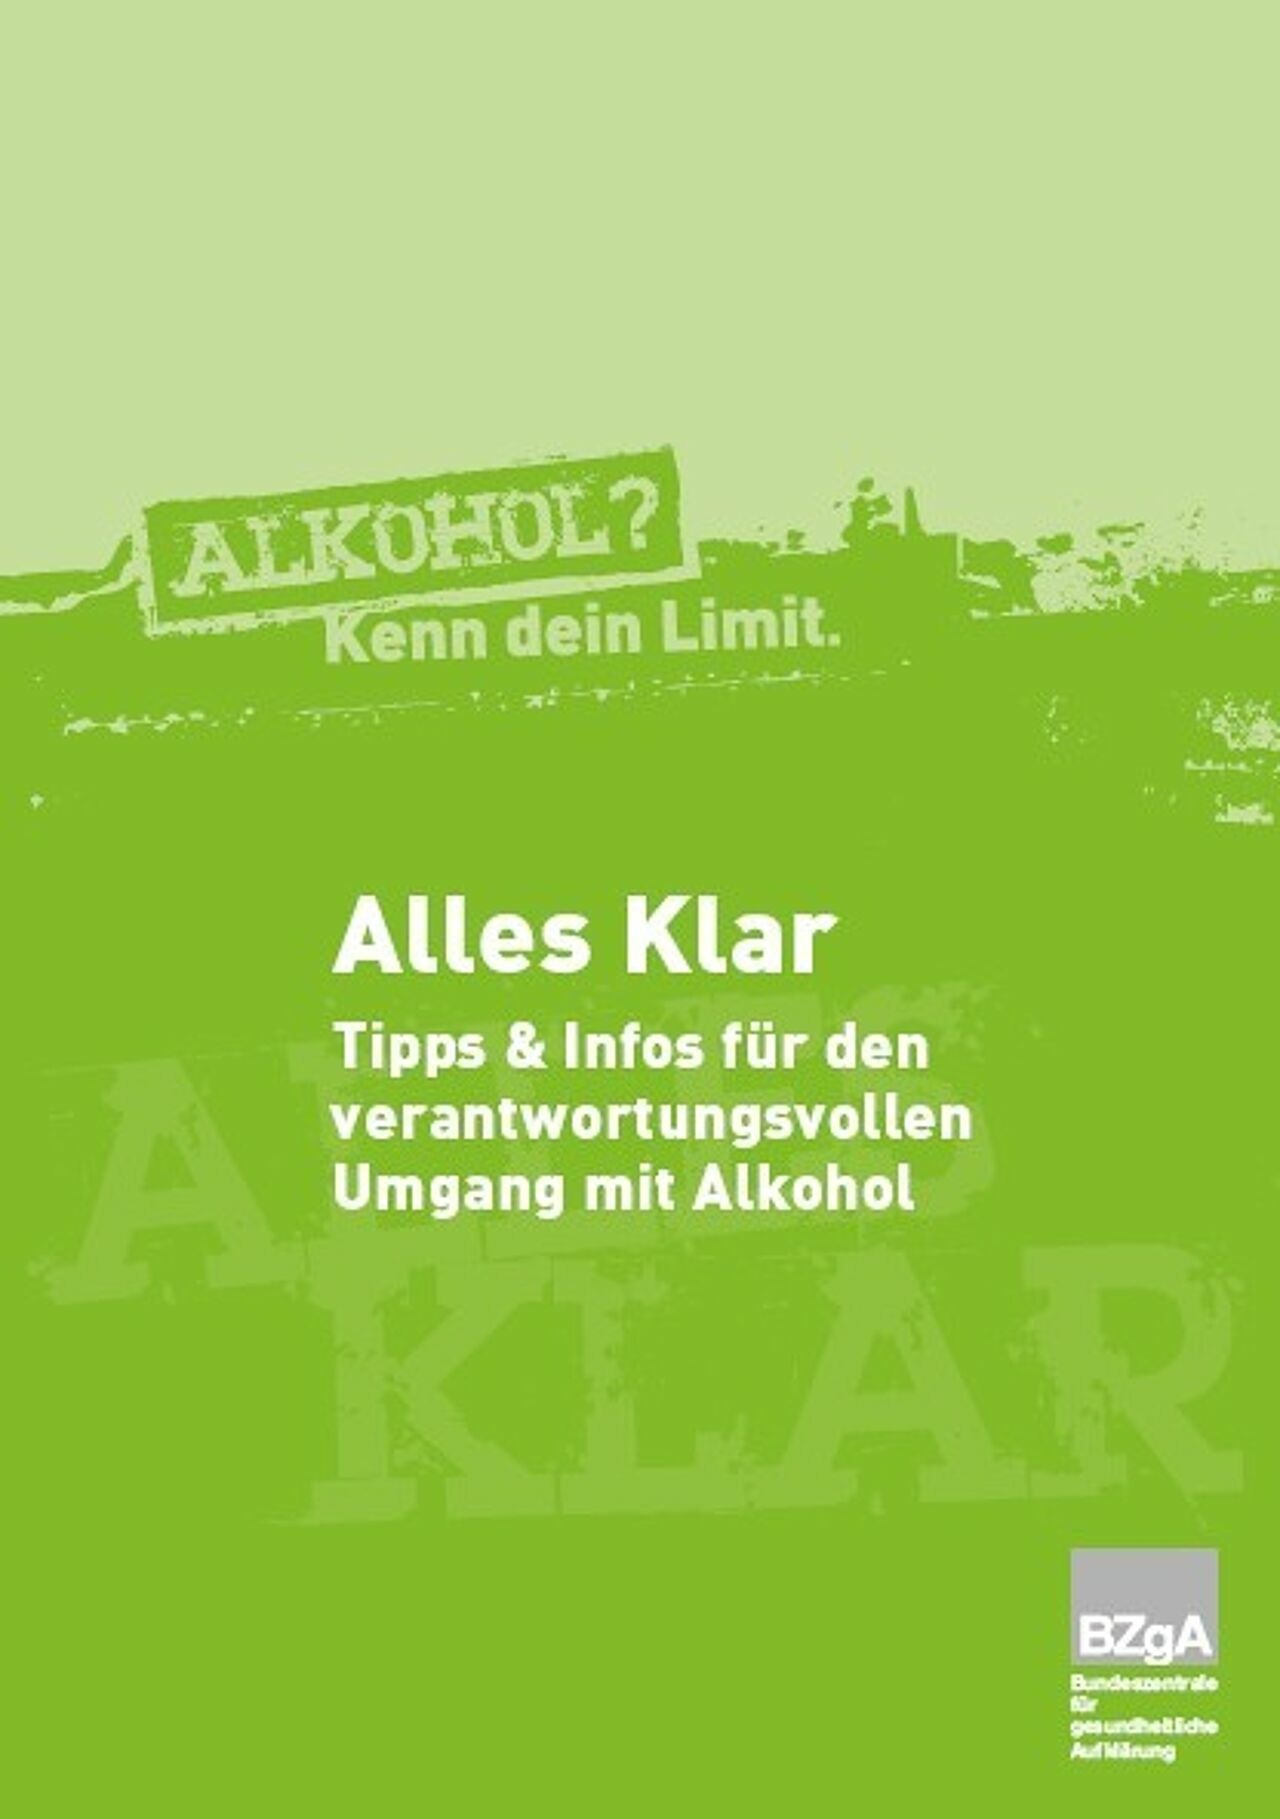 Deckblatt der Broschüre "Alles klar? Tipps und Informationen für den verantwortungsvollen Umgang mit Alkohol."